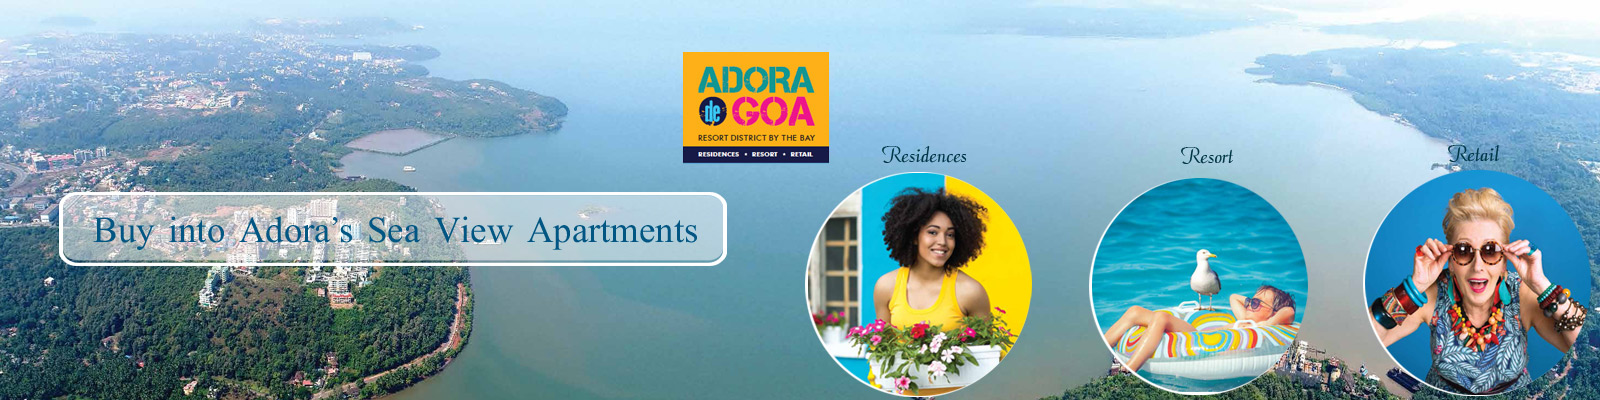 Adora De Goa Goa